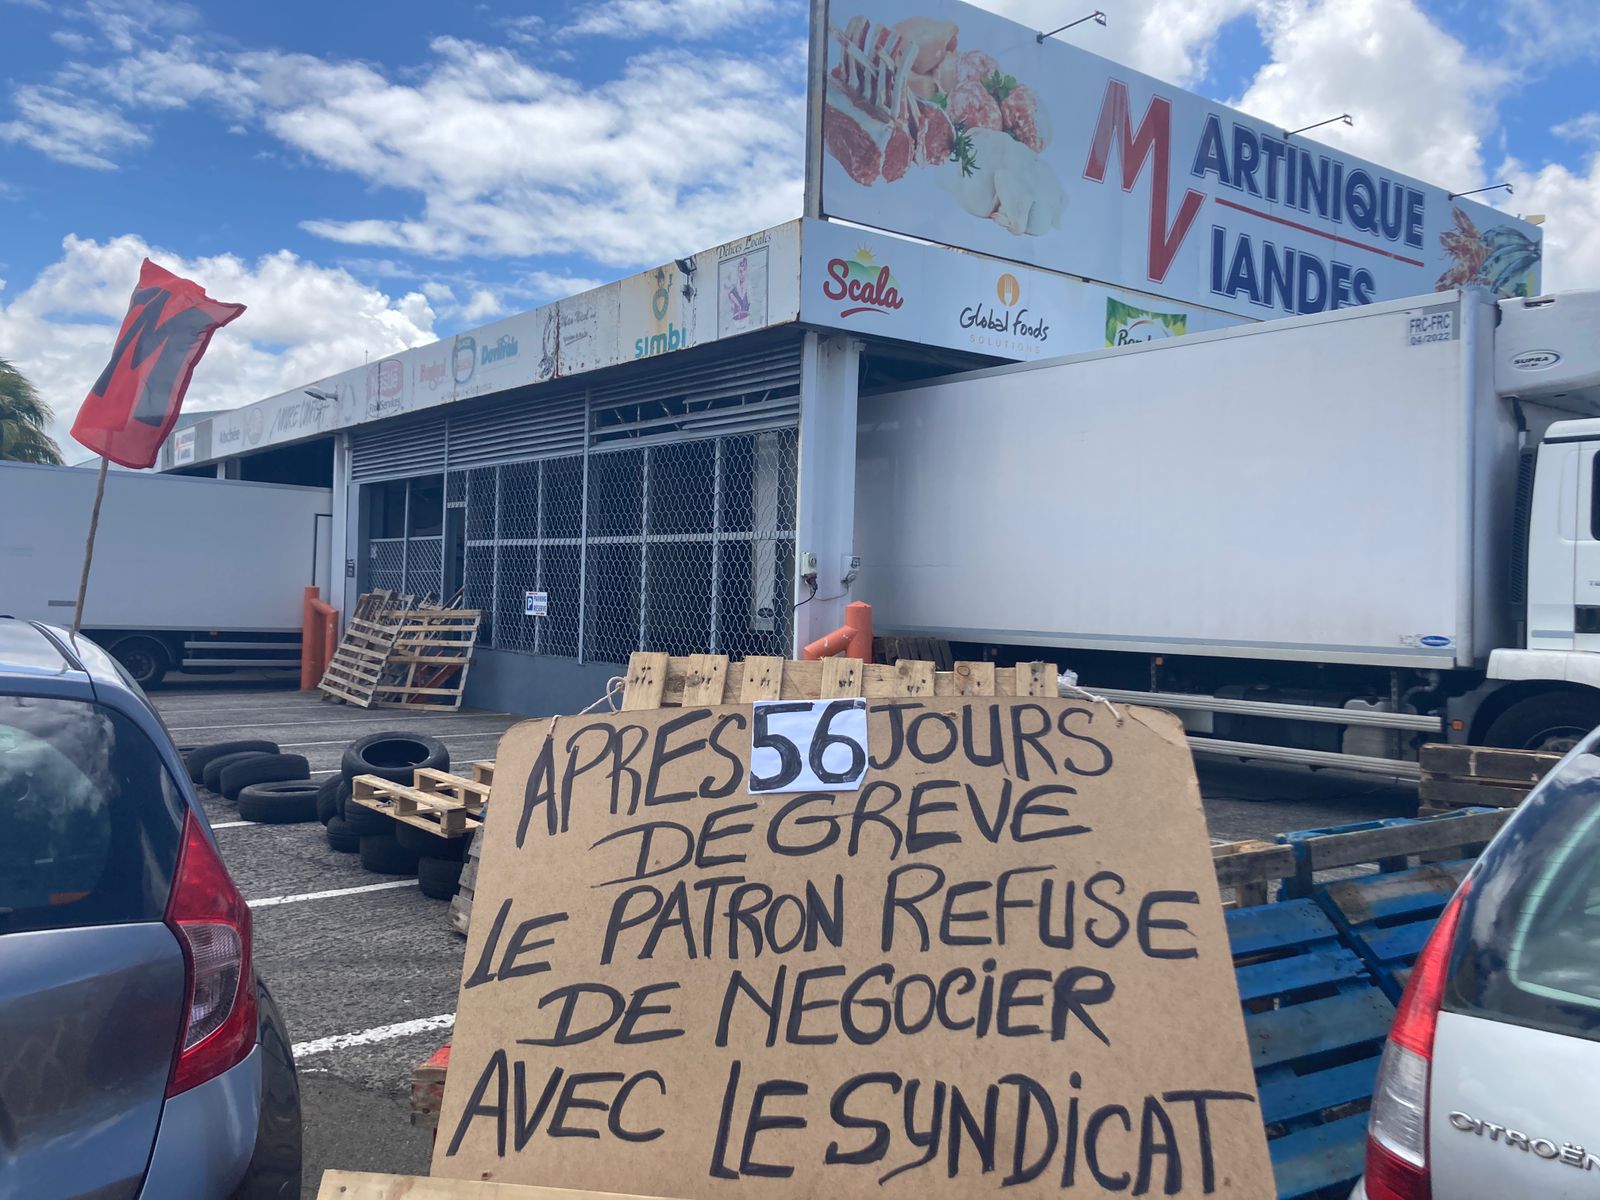     Nouvelle opération coup de poing des salariés de Carrefour Market

